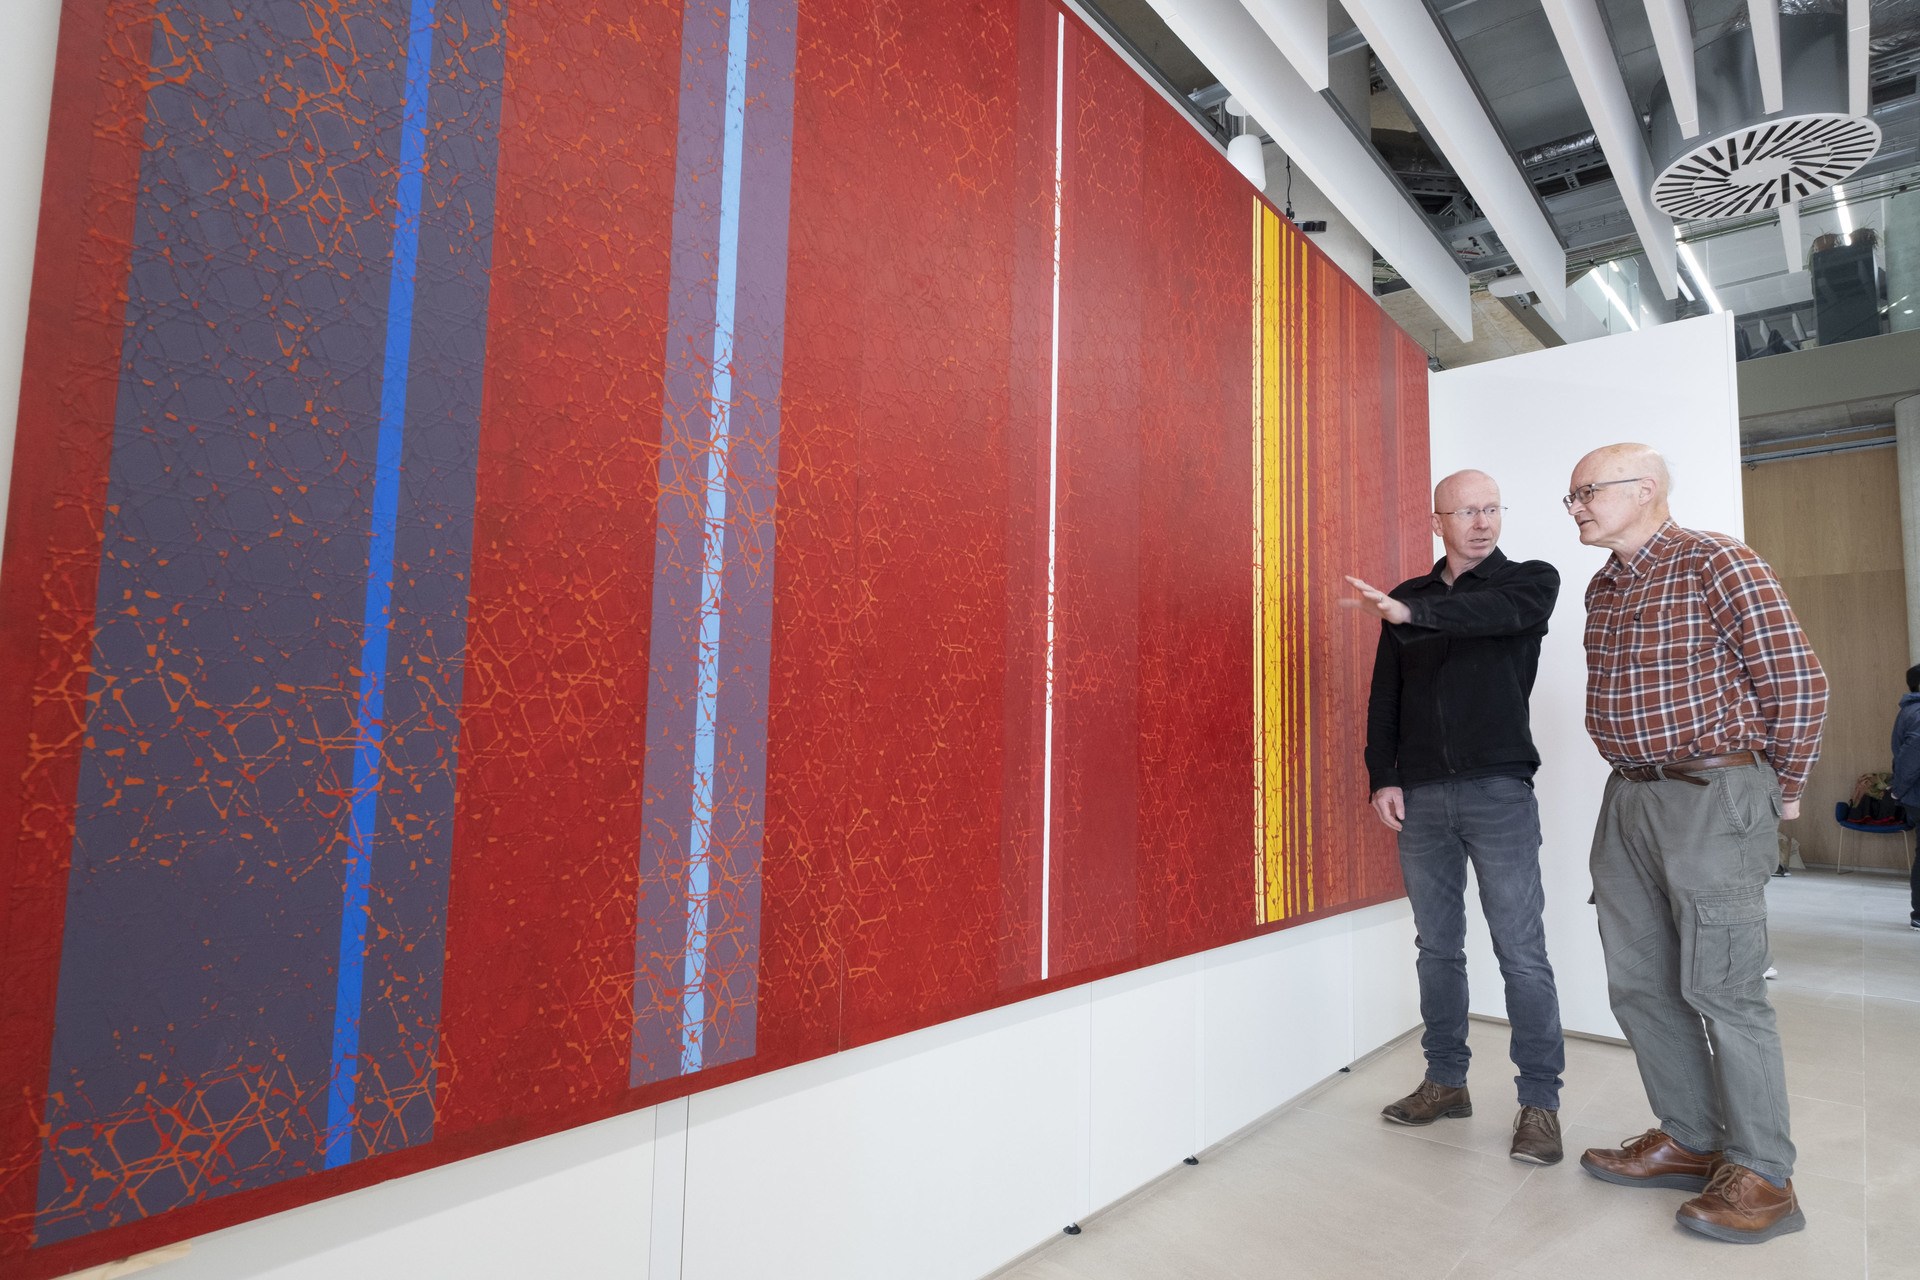 Artist Gregor Harvie discusses his Kelvin-Inspired artwork with Professor Stephen Barnett (centre) of the University of Glasgow's School of Physics & Astronomy